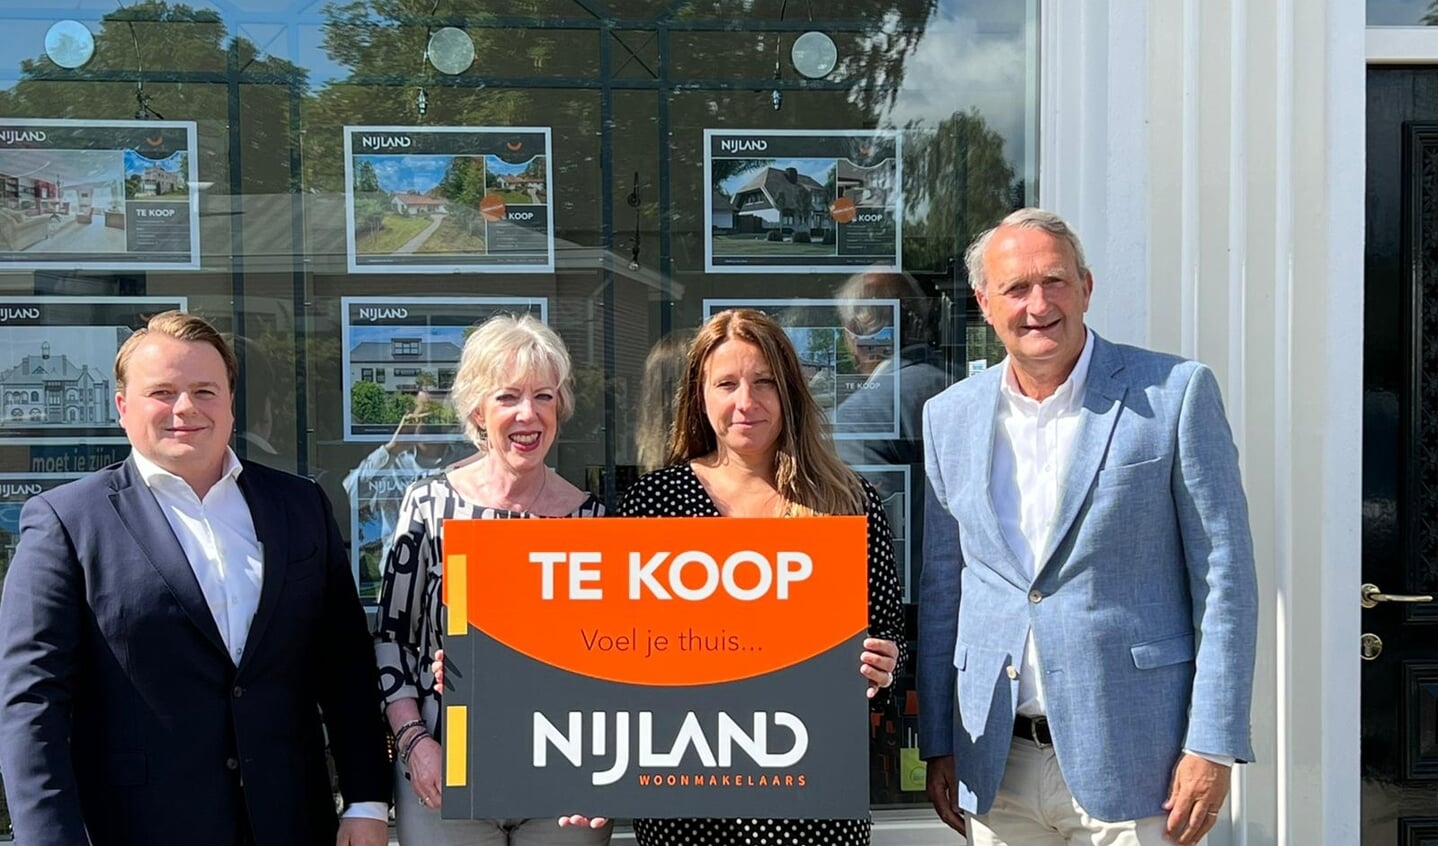 Het team van Nijland Makelaars Baarn met vlnr Jeroen Jager, Tineke Janssen, Muriël van Tuijl
en Willem Prins.